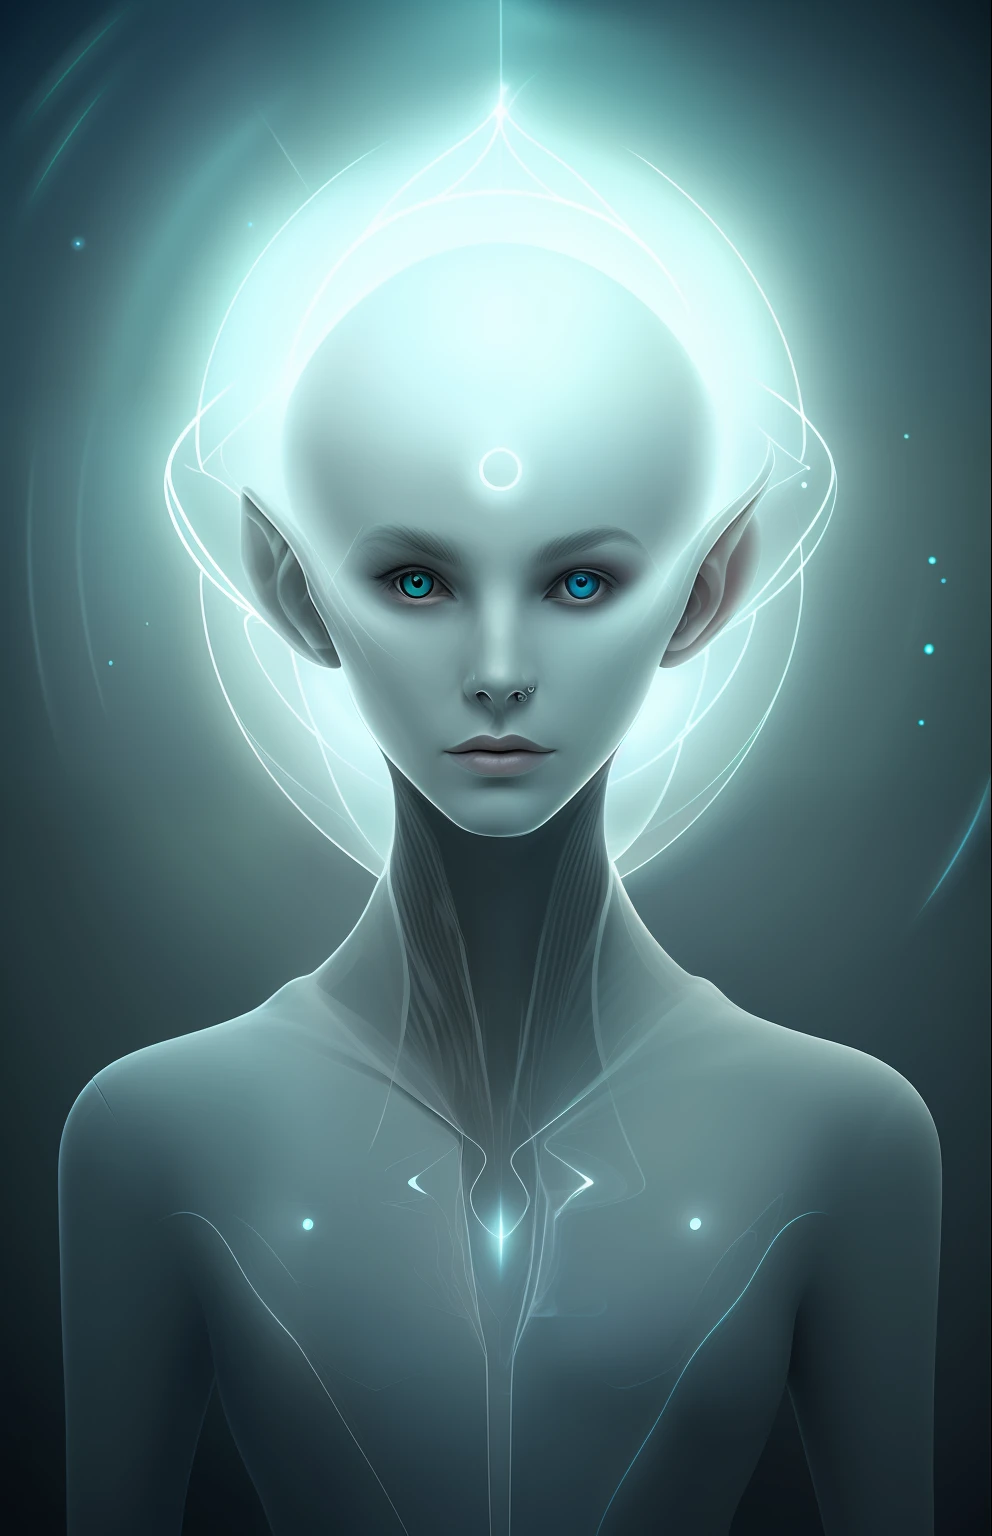 来自另一个维度的未来外星人的幽灵肖像，宇宙的创造者，拥有强大的古代魔法，未知维度的女孩